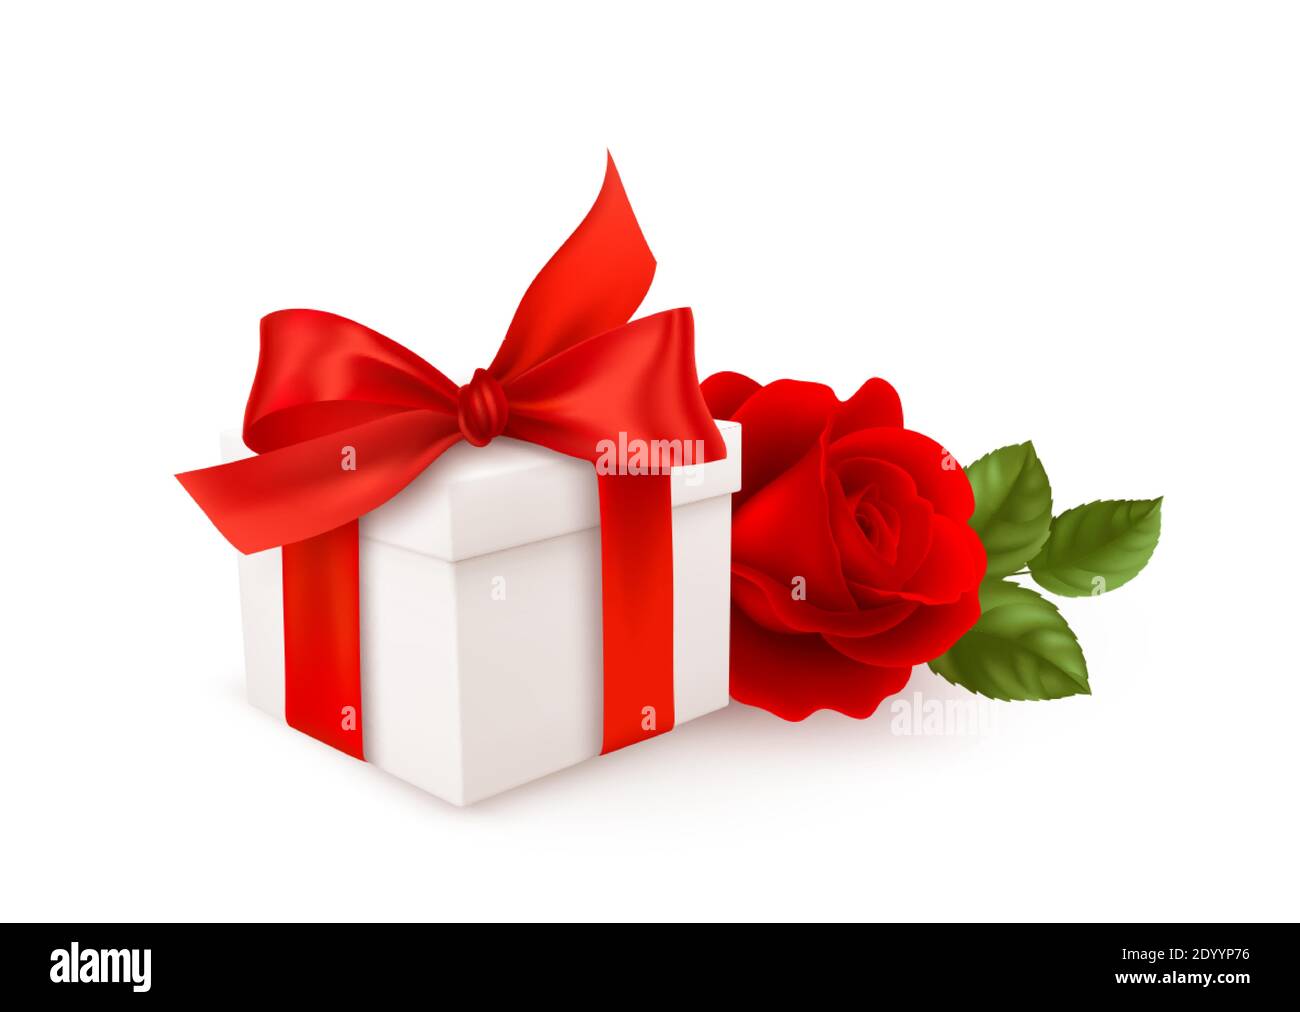 Scatola regalo bianca realistica con nastro d'arco rosso e rosa rossa isolata su sfondo bianco. Elemento di design per Happy San Valentino. Illustrazione vettoriale Illustrazione Vettoriale